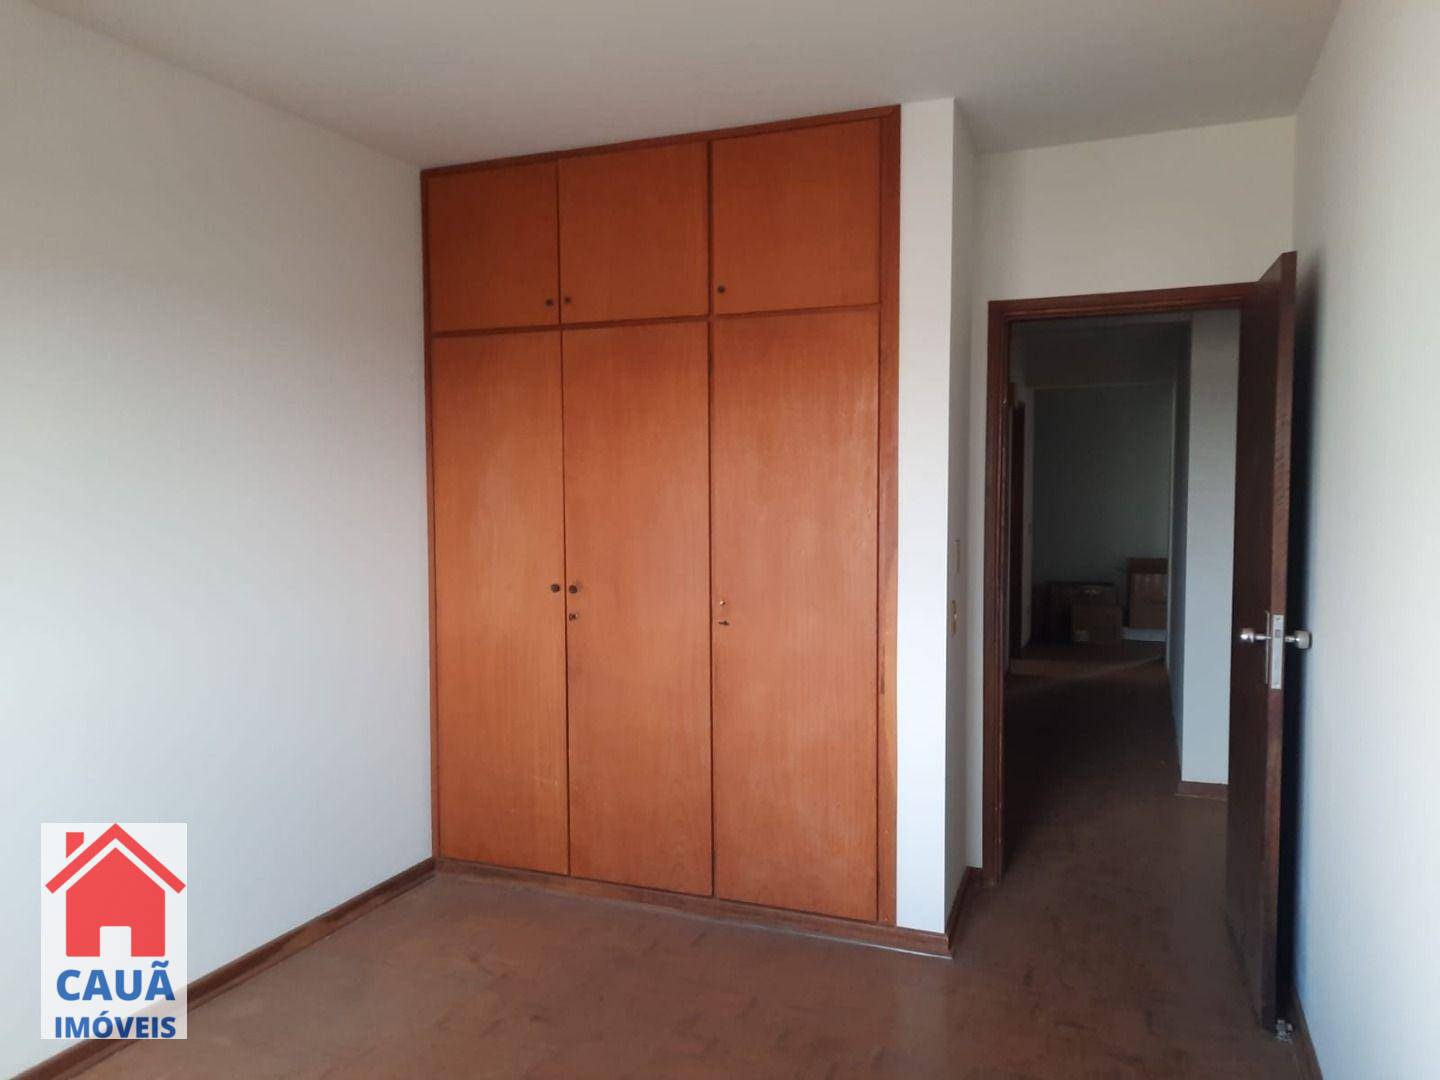 Apartamento, 4 quartos, 245 m² - Foto 3